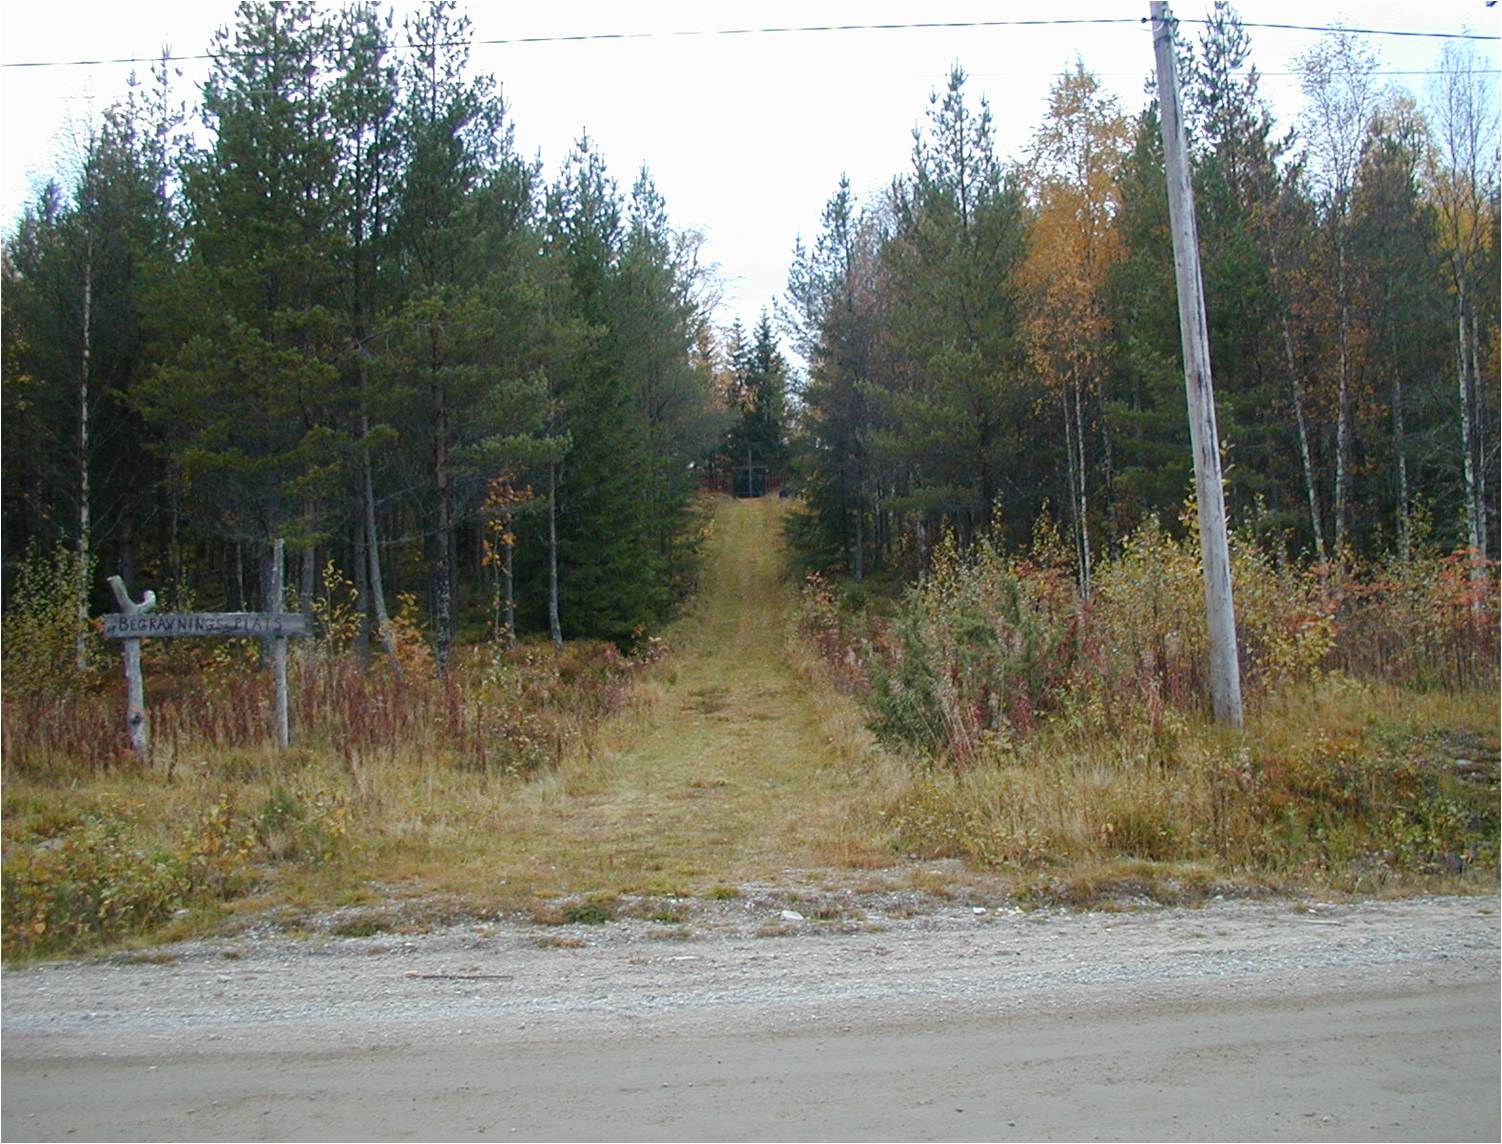 Vägen upp till Begravningsplats från landsvägen genom Björkberg. Foto från öster.